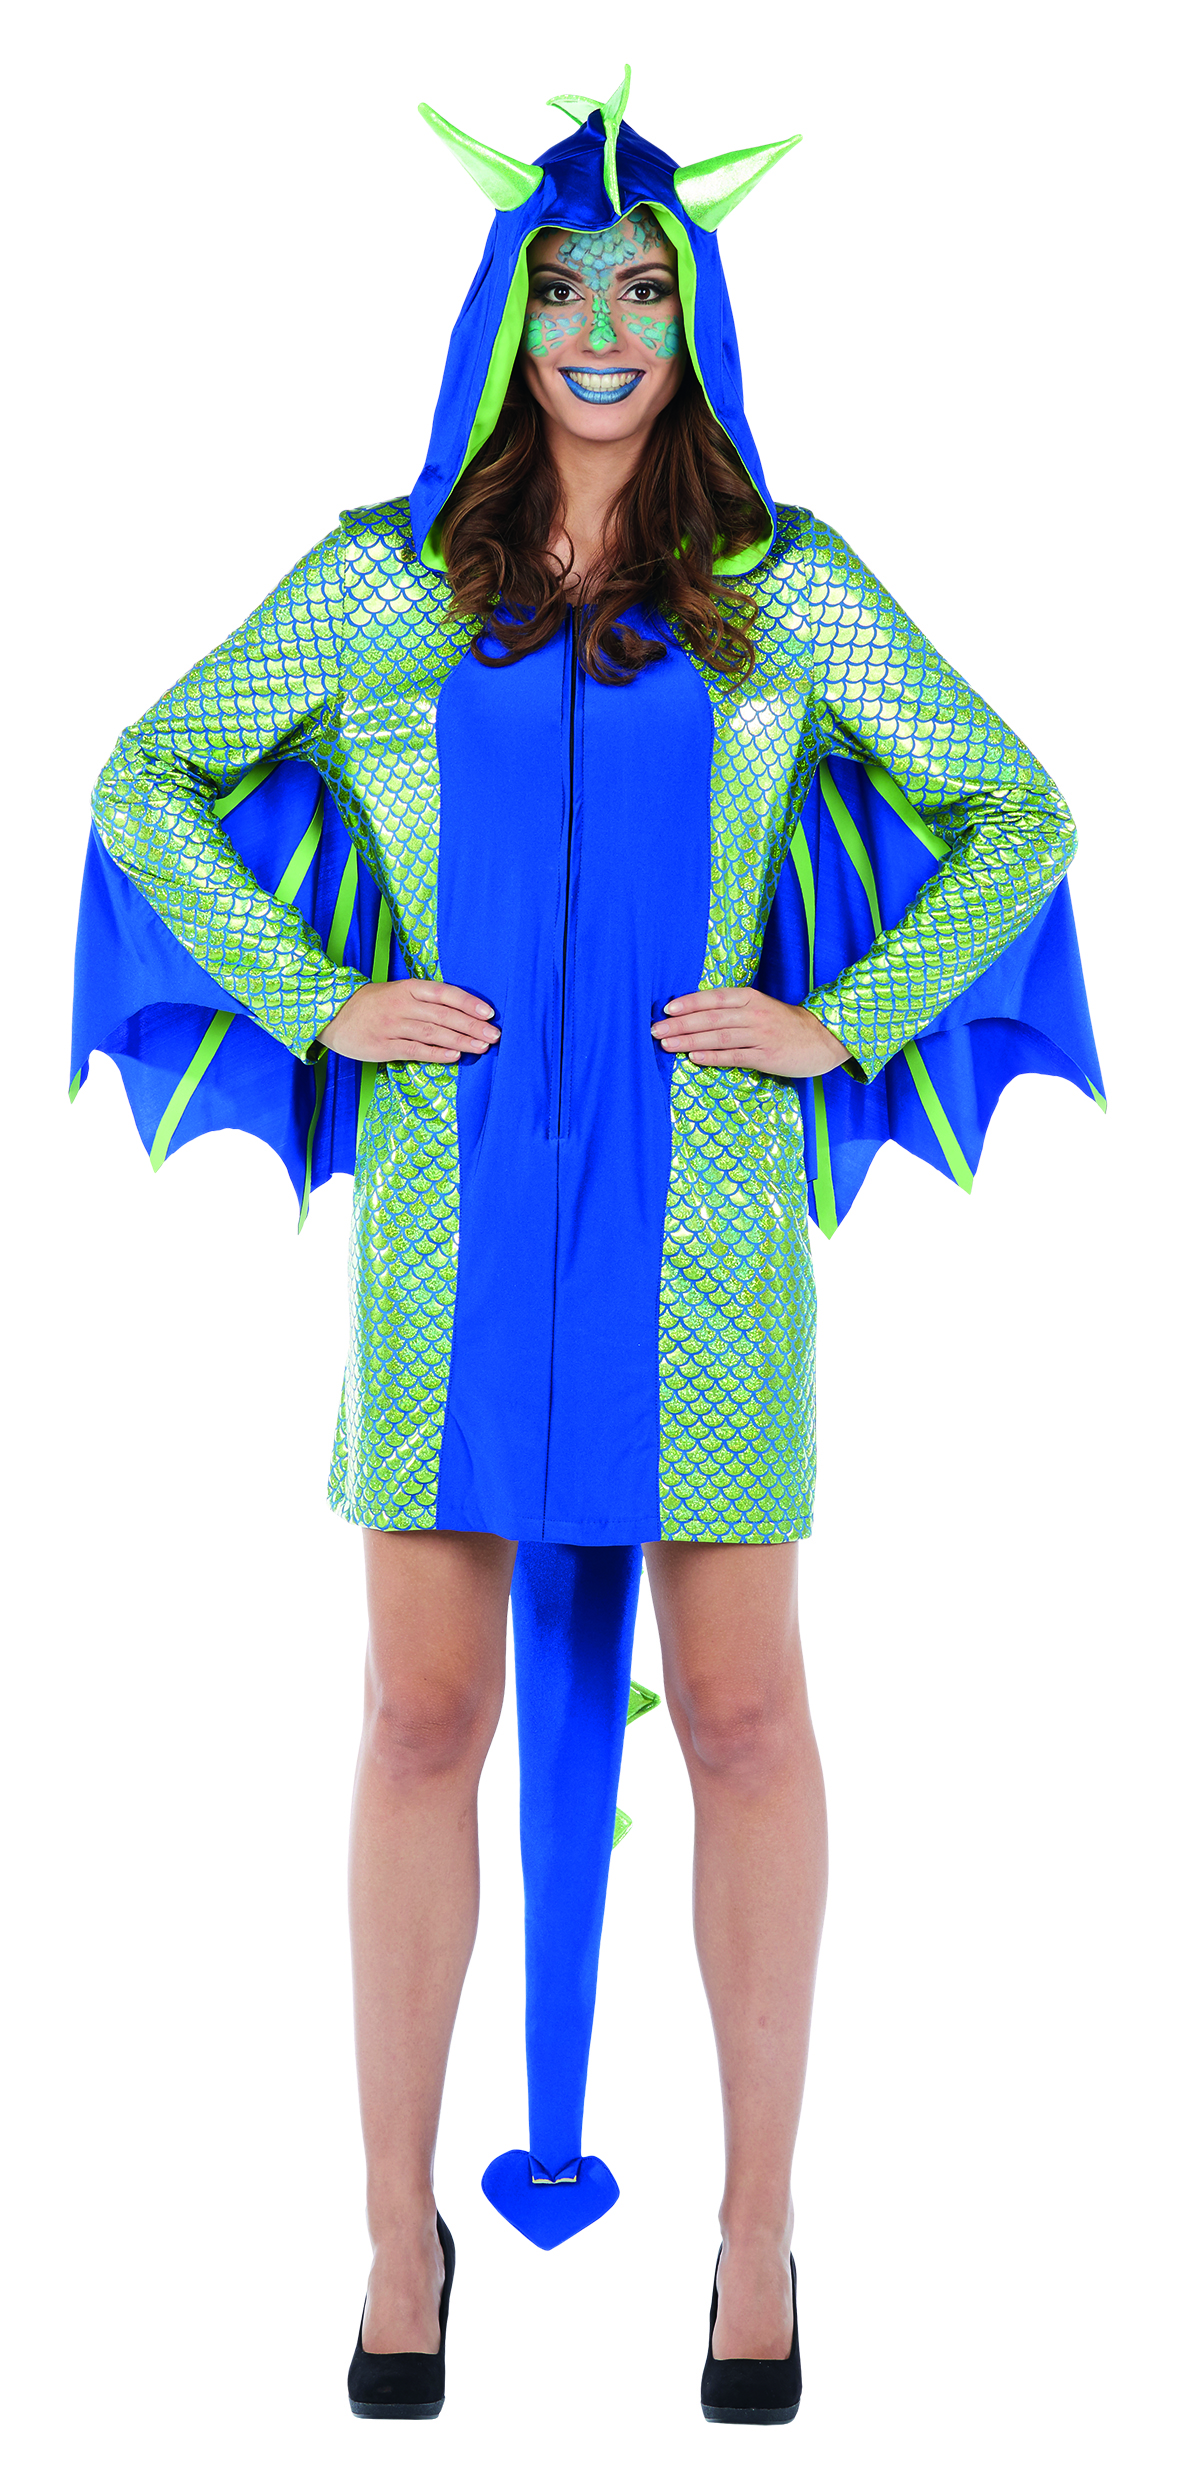 PxP 118217 - Drachenfrau Drachen Kostüm Gr. 34 - 42, Kleid Kapuzenkleid